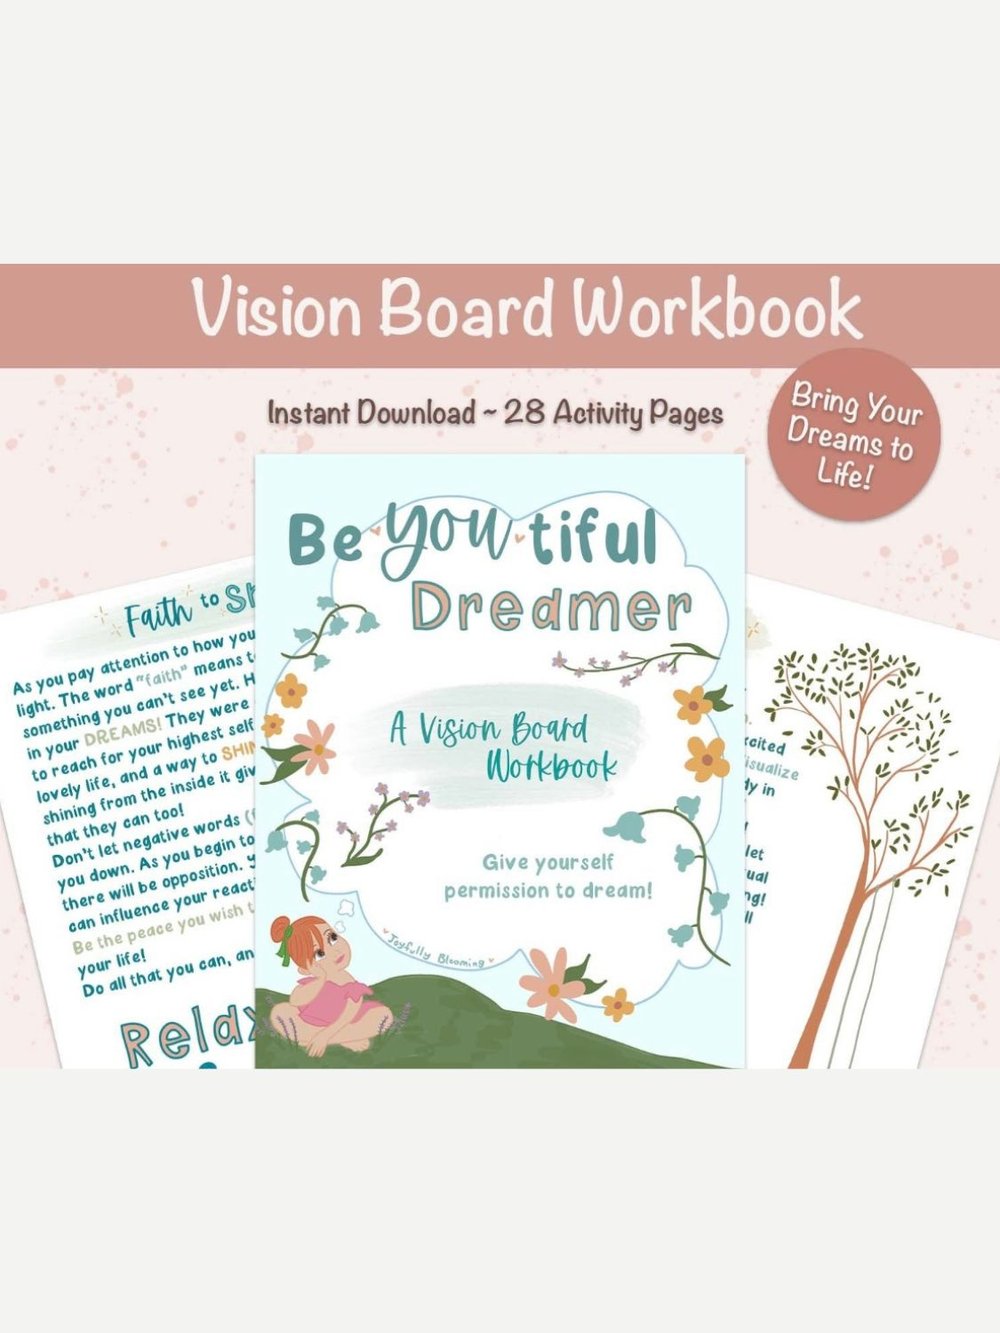 Be~YOU~tiful Dreamer Vision Board Workbook, JoyfullyBlooming — Two Roads  Wellness Clinic